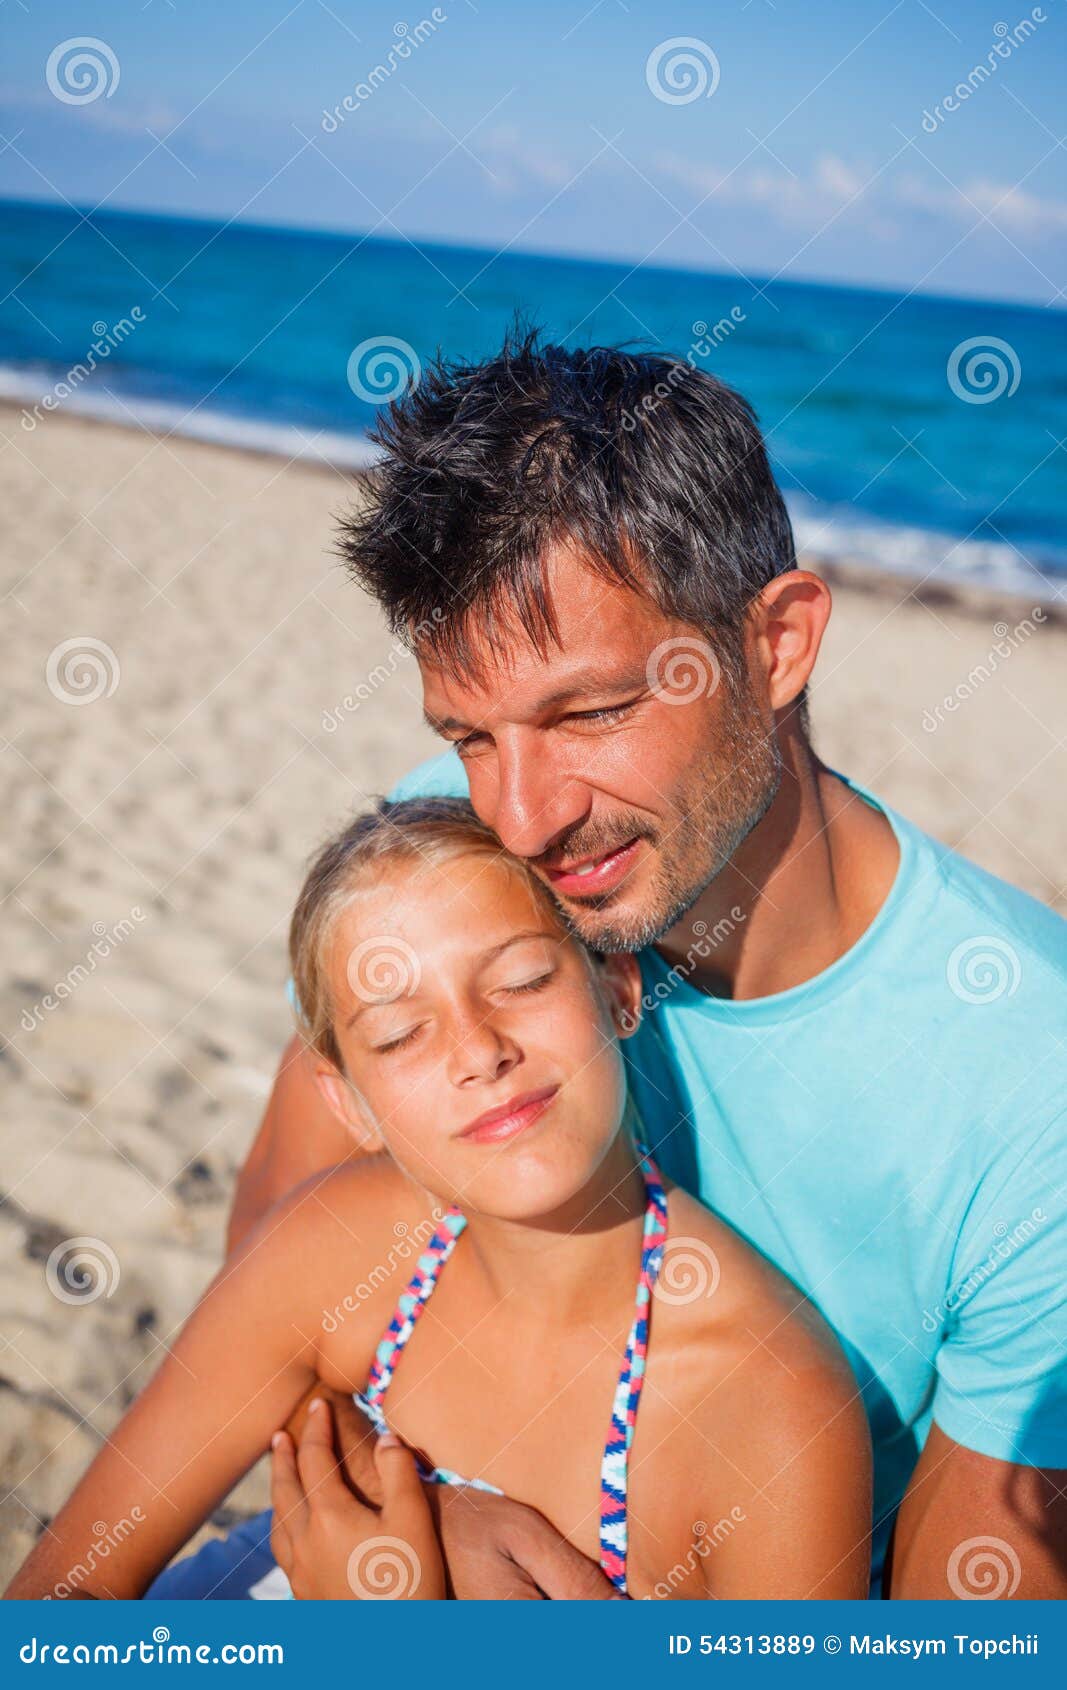 дочка с папой на голом пляже фото 22